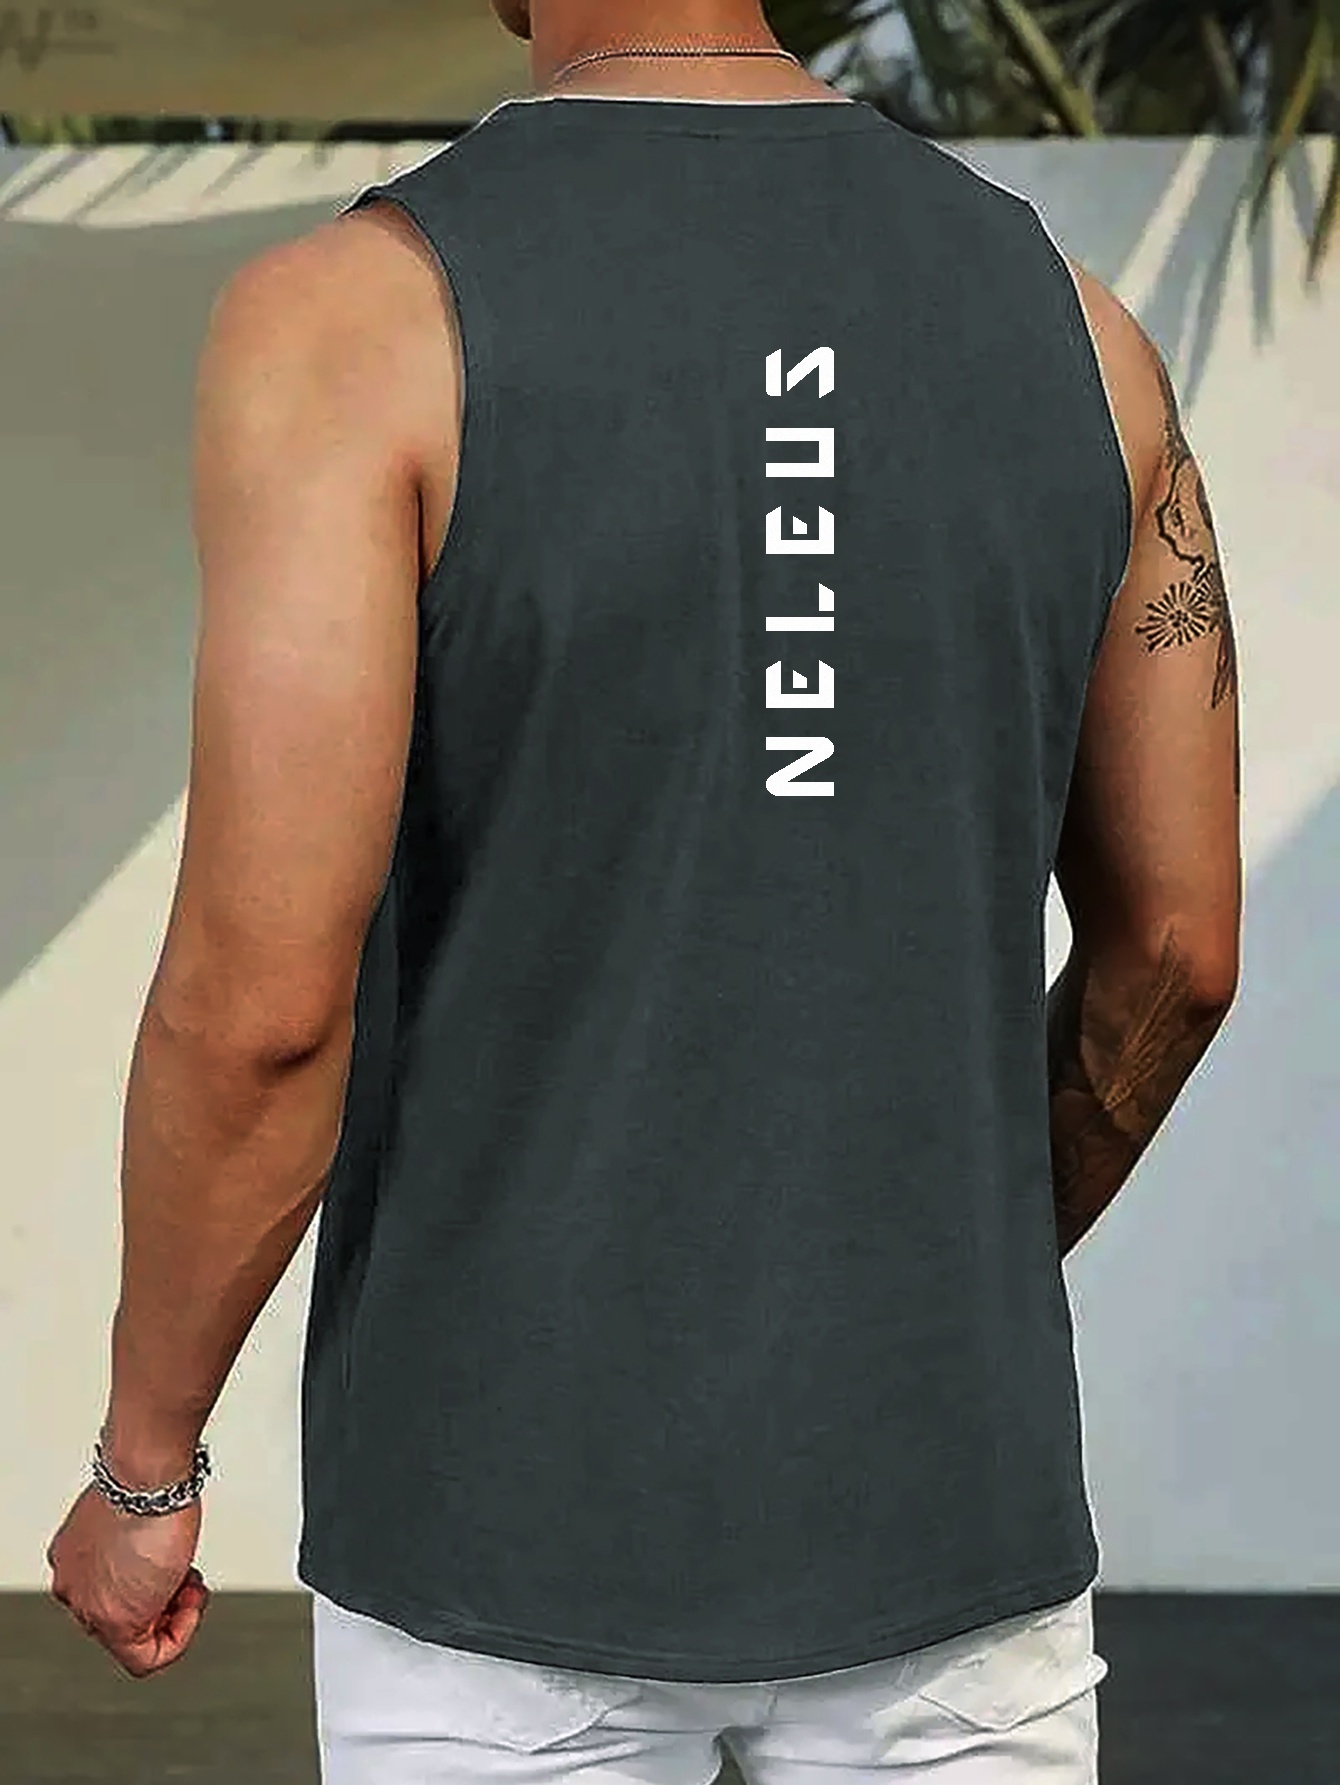  NELEUS Mens Workout Tank Tops Sleeveless Running Shirts